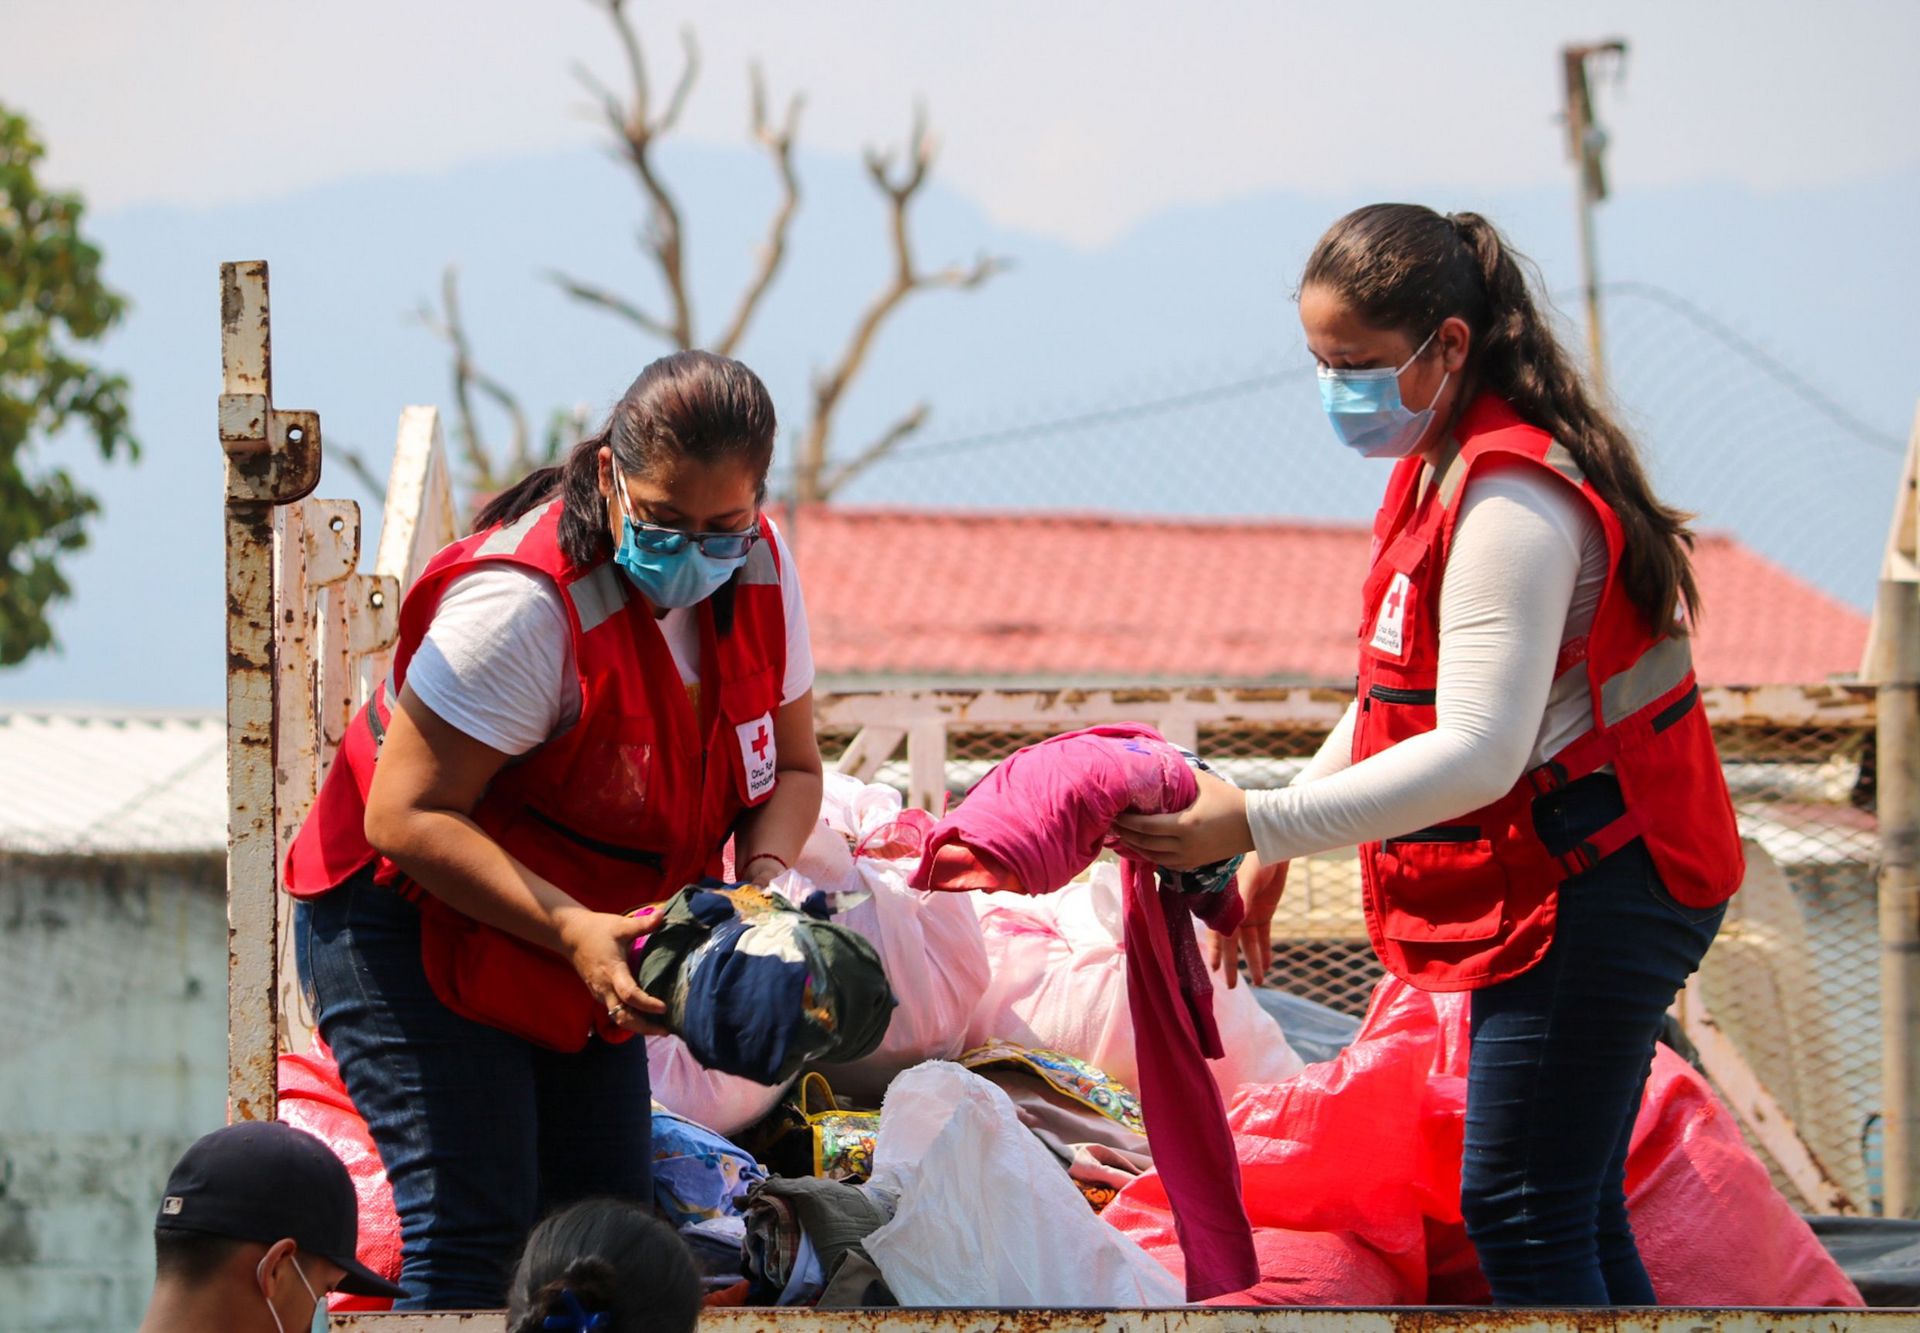 Auswirkungen des Hurrikans Eta in Honduras: Einsatz des Honduranischen Roten Kreuzes im Katastrophengebiet und Versorgung der betroffenen Bevölkerung mit Hilfsgütern, hier Textilien - November 2020